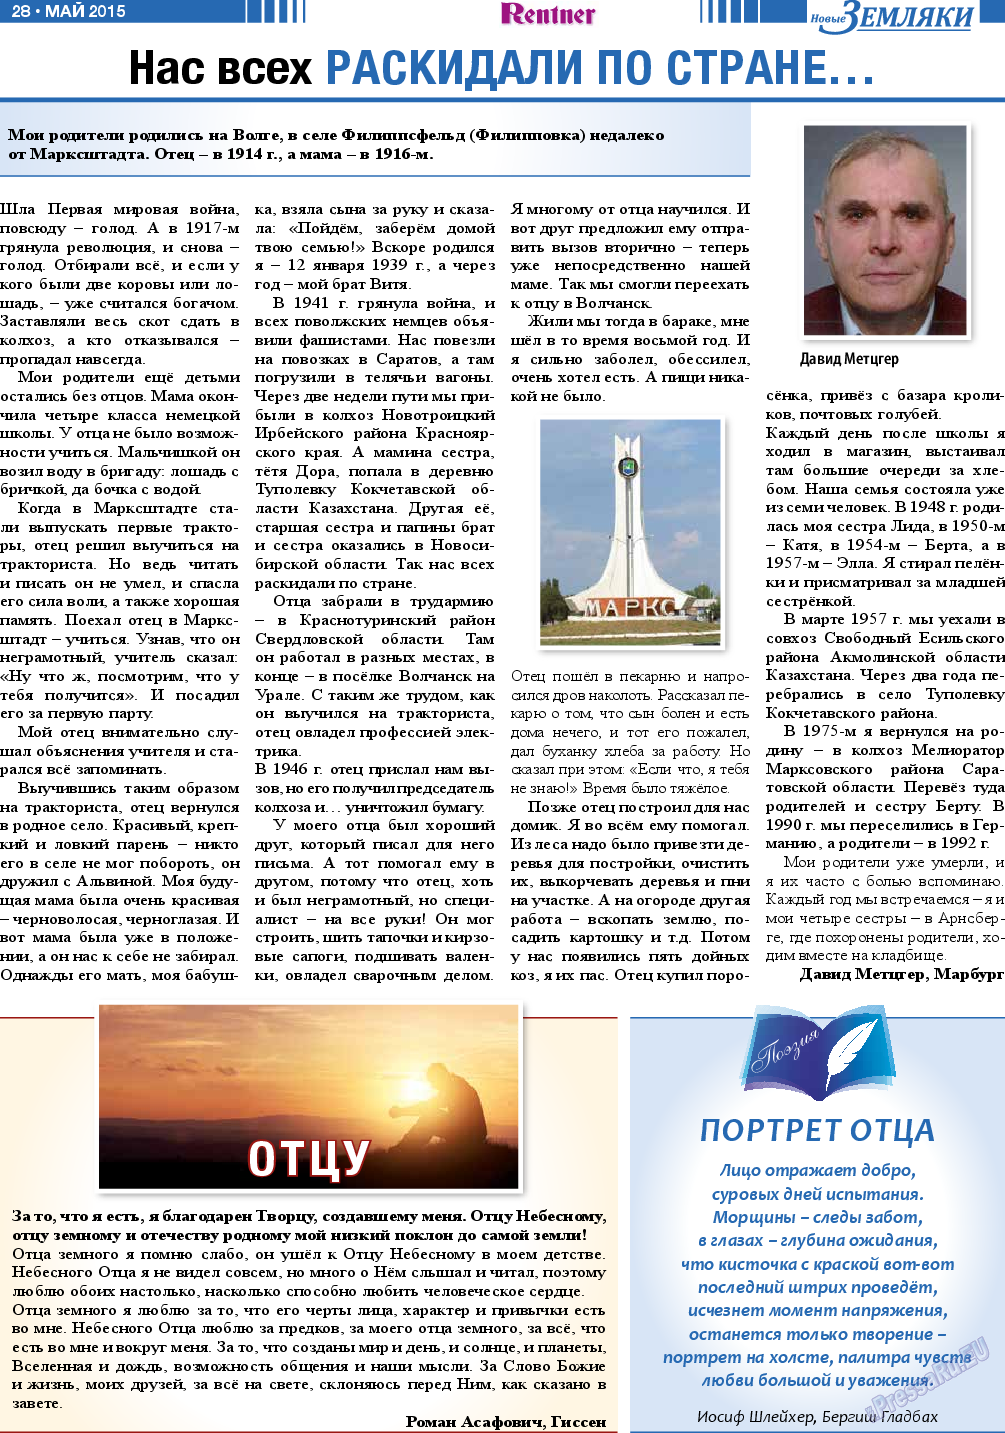 Новые Земляки, газета. 2015 №5 стр.28